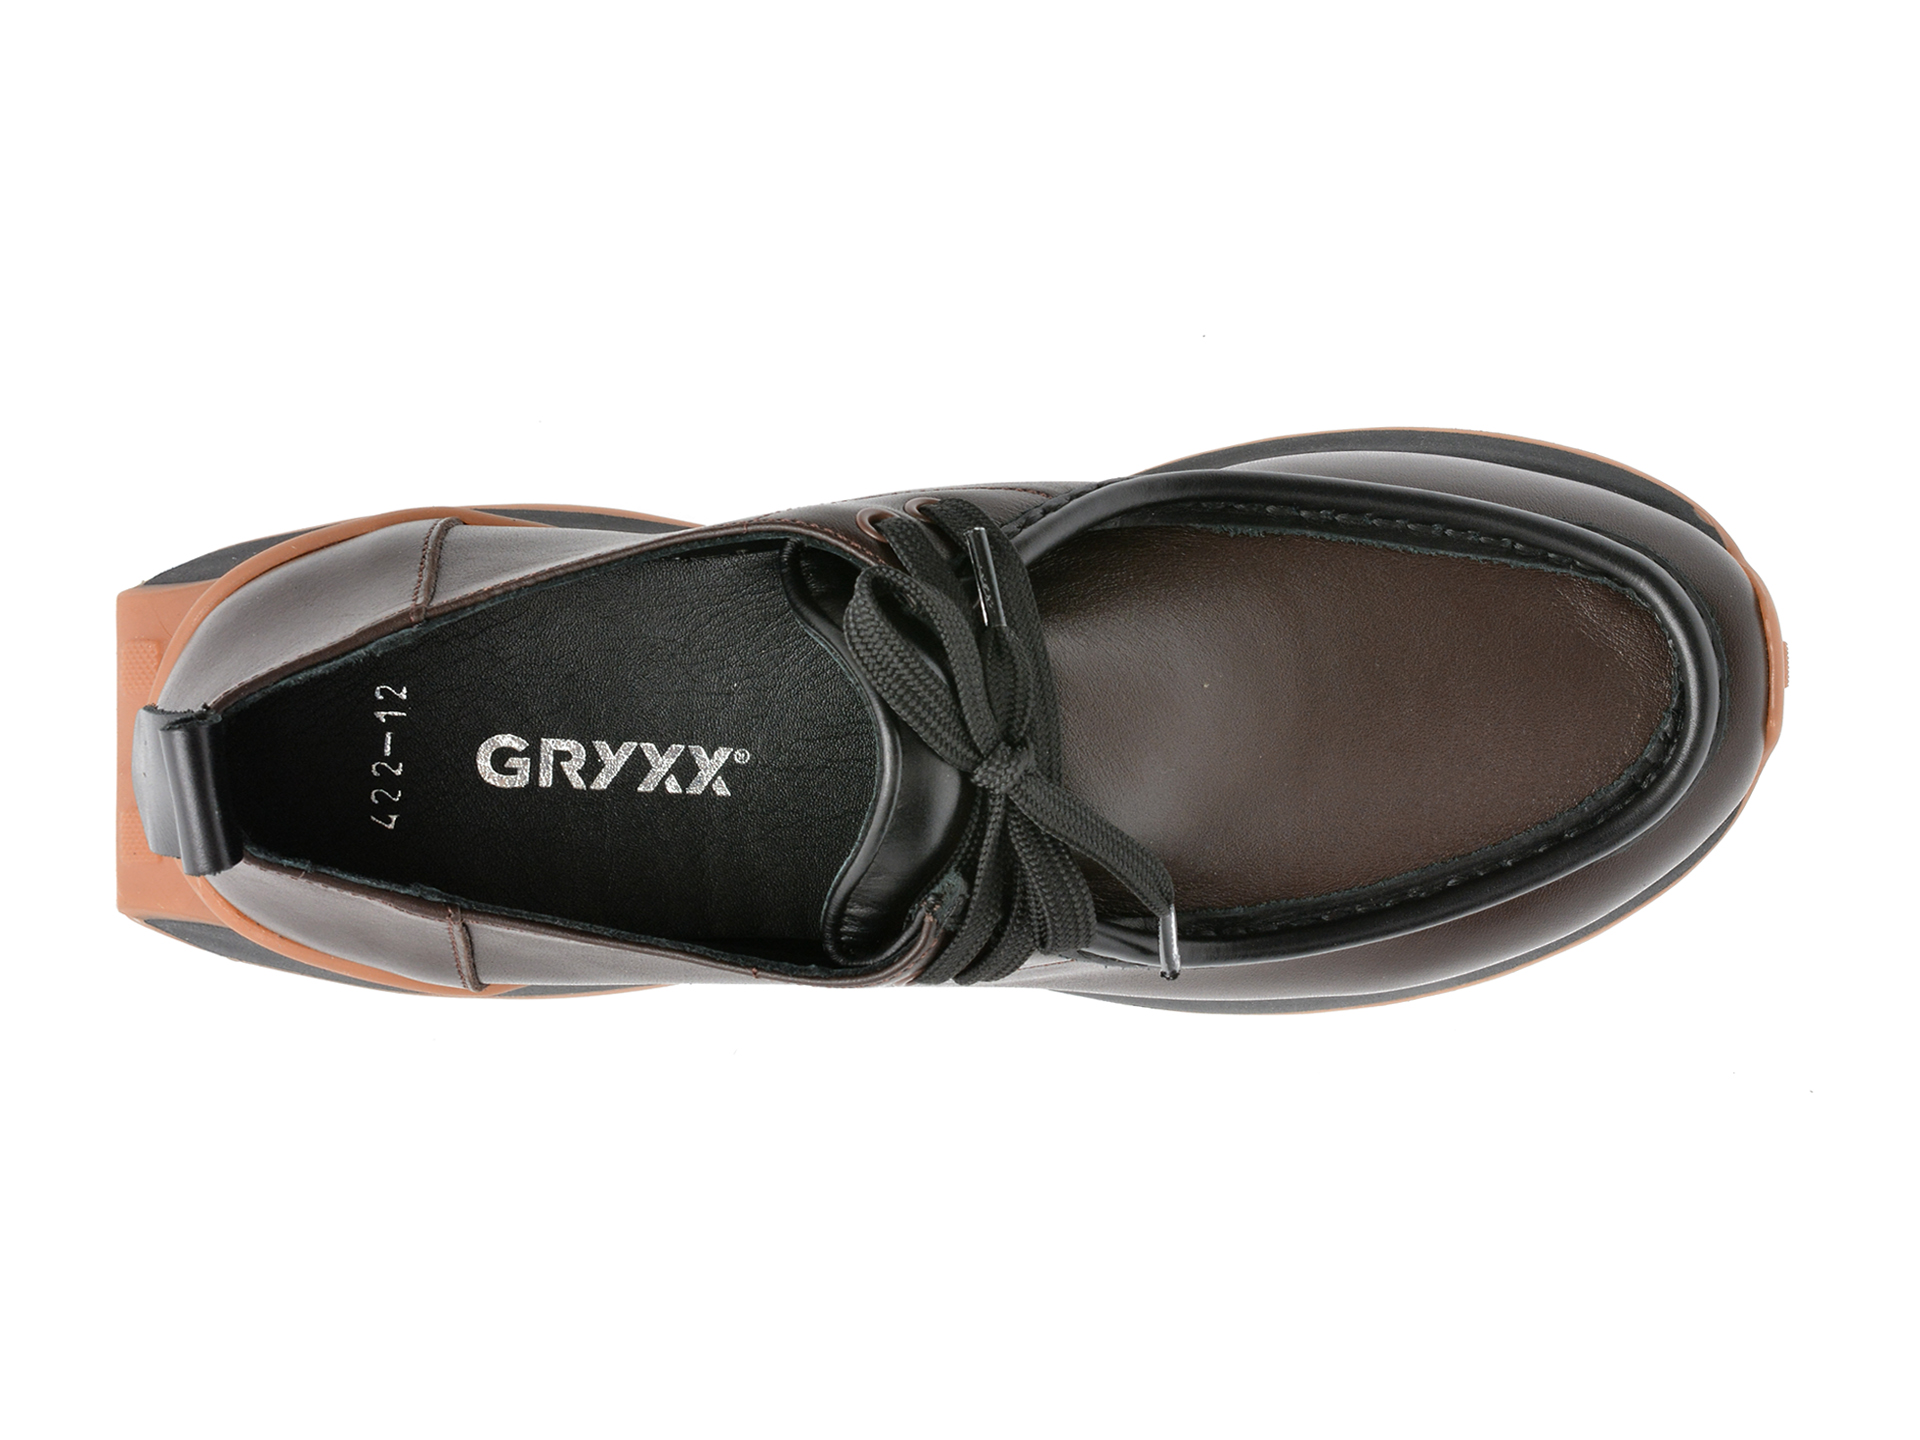 Comandă Încălțăminte Damă, la Reducere  Pantofi GRYXX maro, 42212, din piele naturala Branduri de top ✓